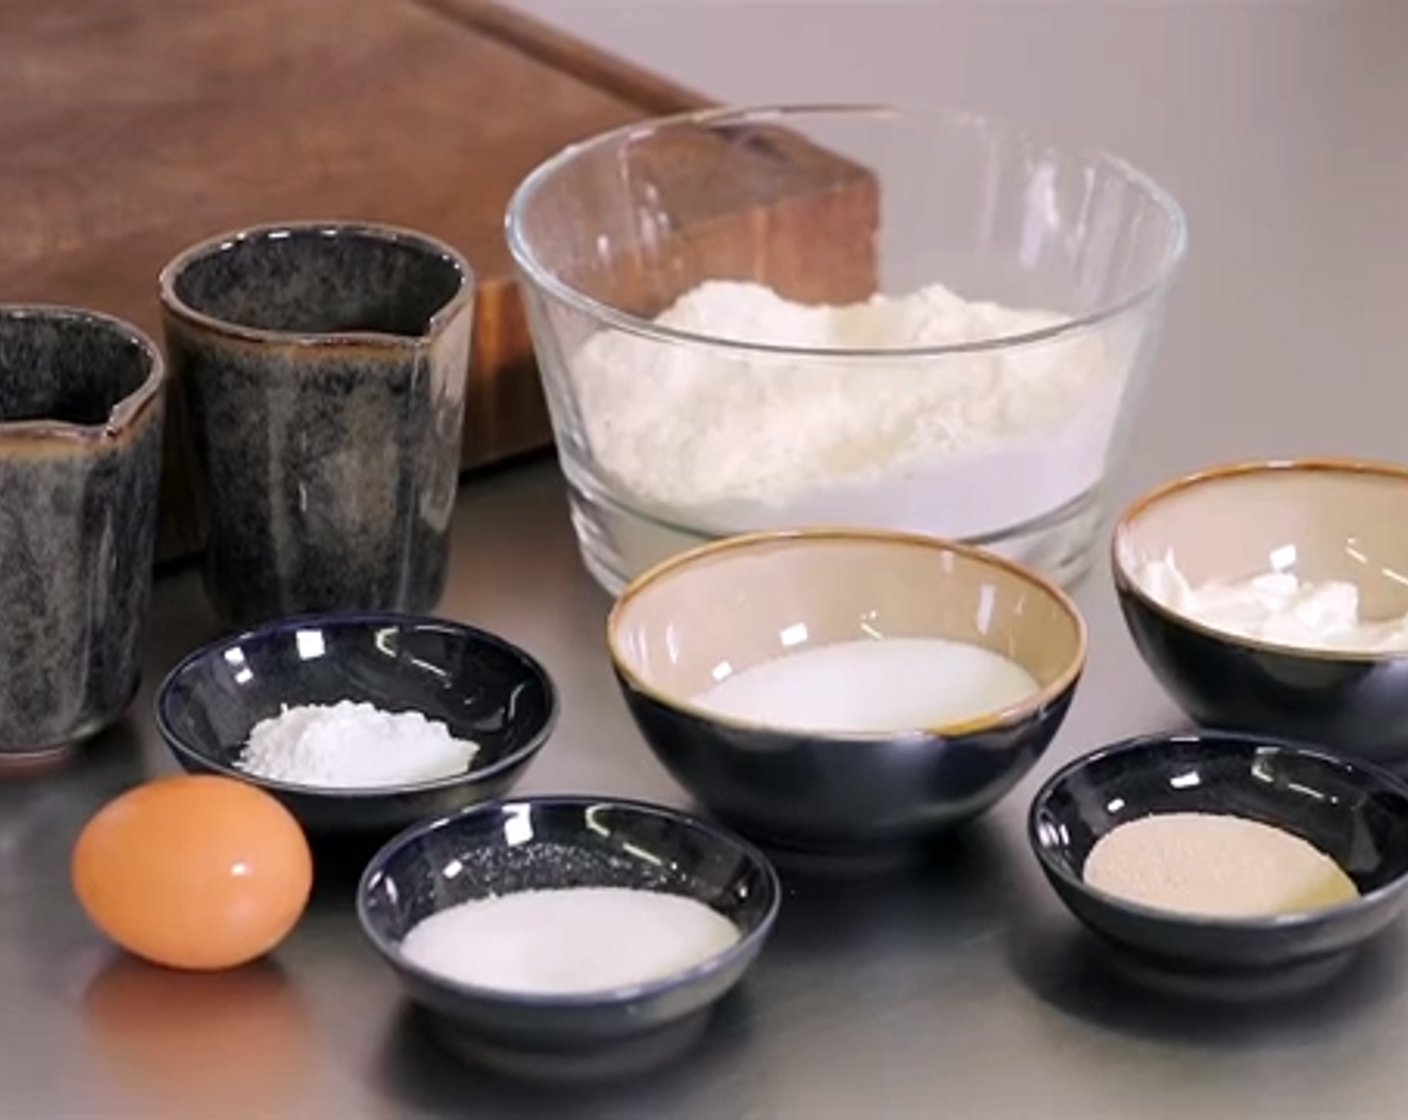 Schritt 1 In einer Schüssel, Mehl (500 g), Salz (2 Teelöffel), Hefe (2 Teelöffel), Backpulver (1 TL), Milch (150 ml), Joghurt (150 g), Ei (1) und Öl (4 Teelöffel)] zu einem geschmeidigen Teig kneten. Den Teig für mindestens 1 Stunde auf das doppelte Volumen aufgehen lassen.